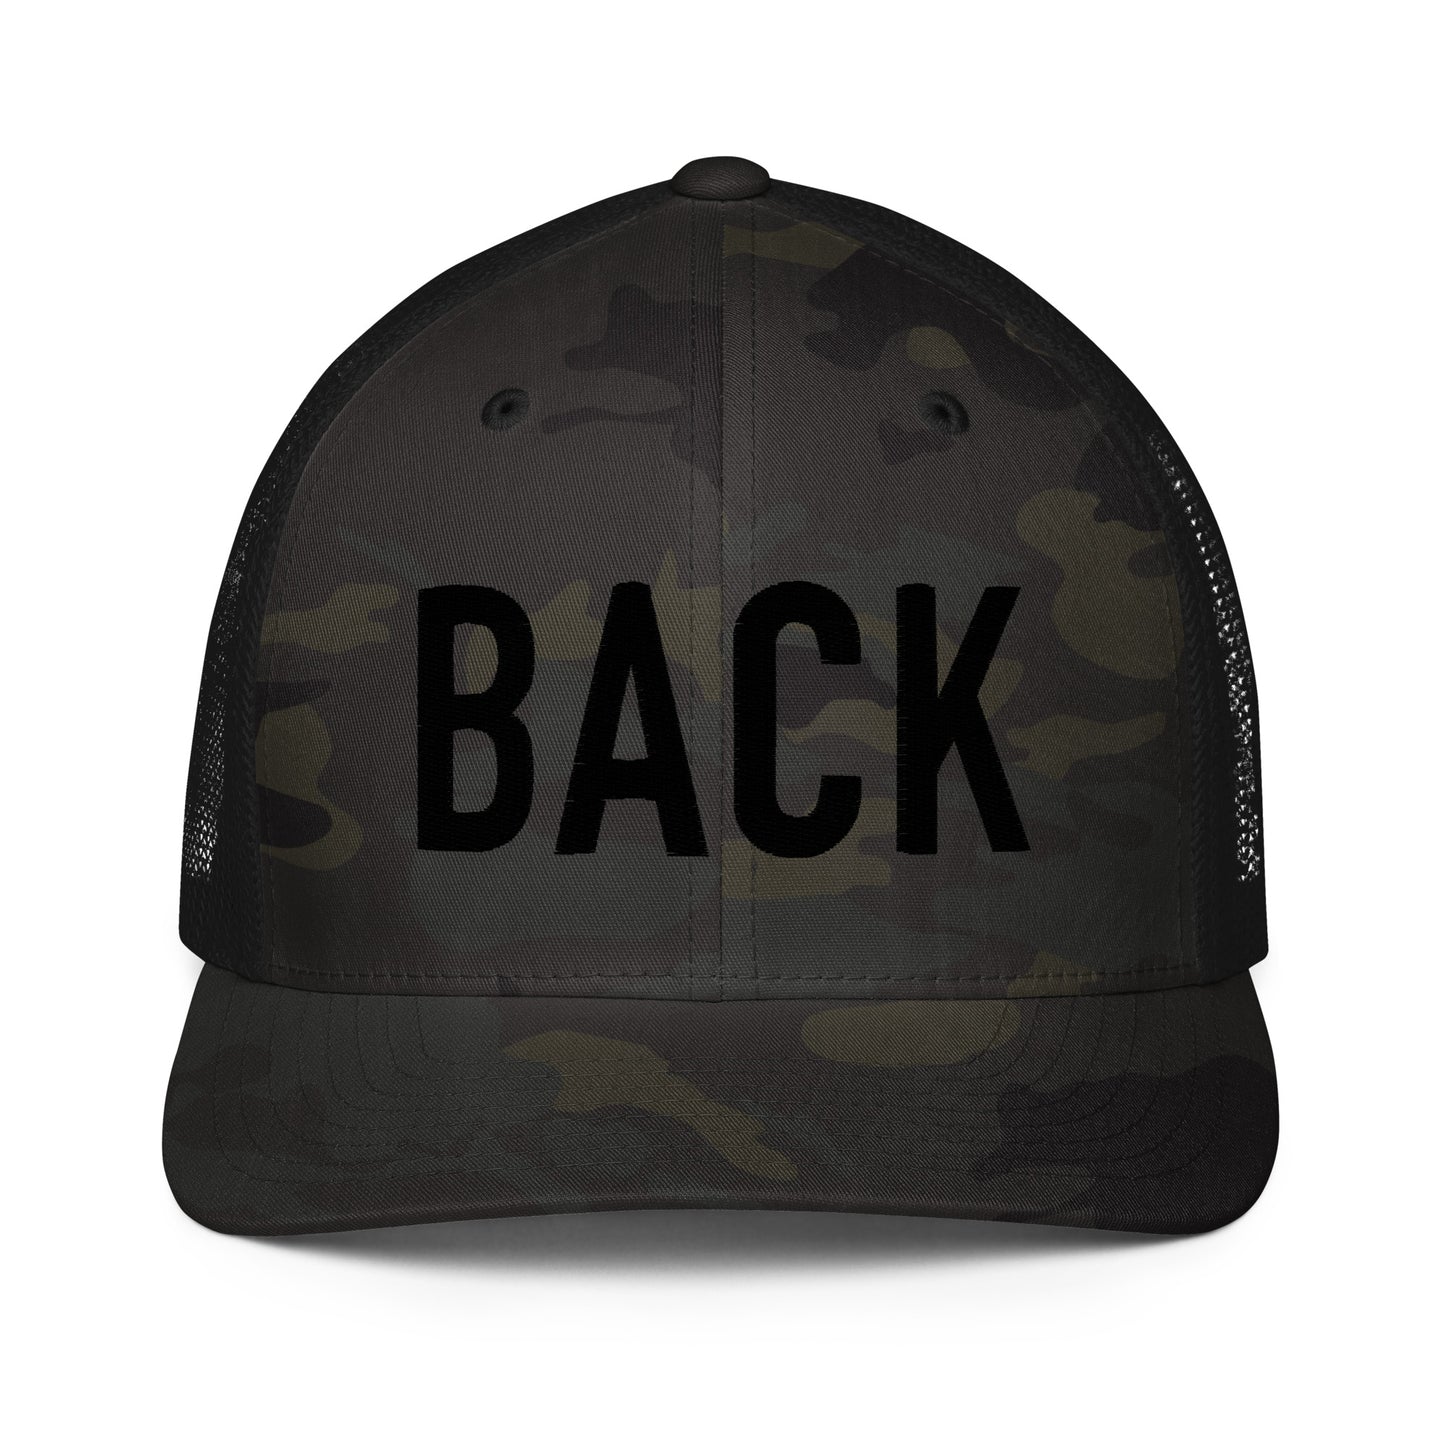 BACK Flexfit Trucker Hat